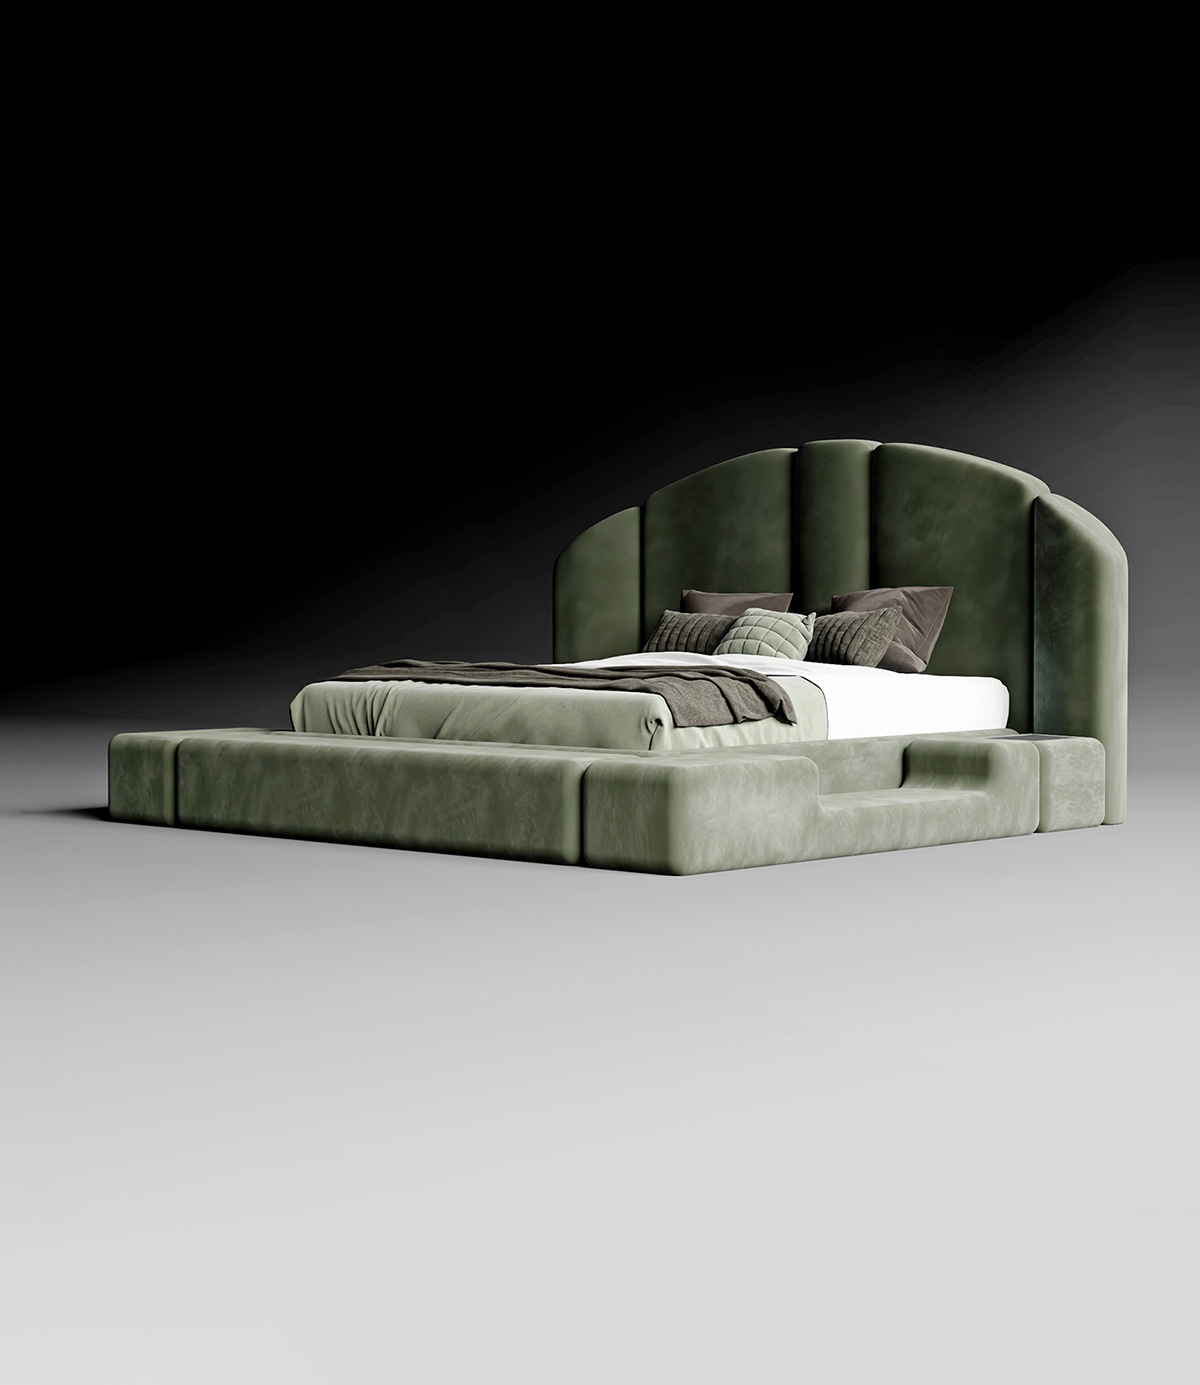 Encore - Concept 01 - Double bed